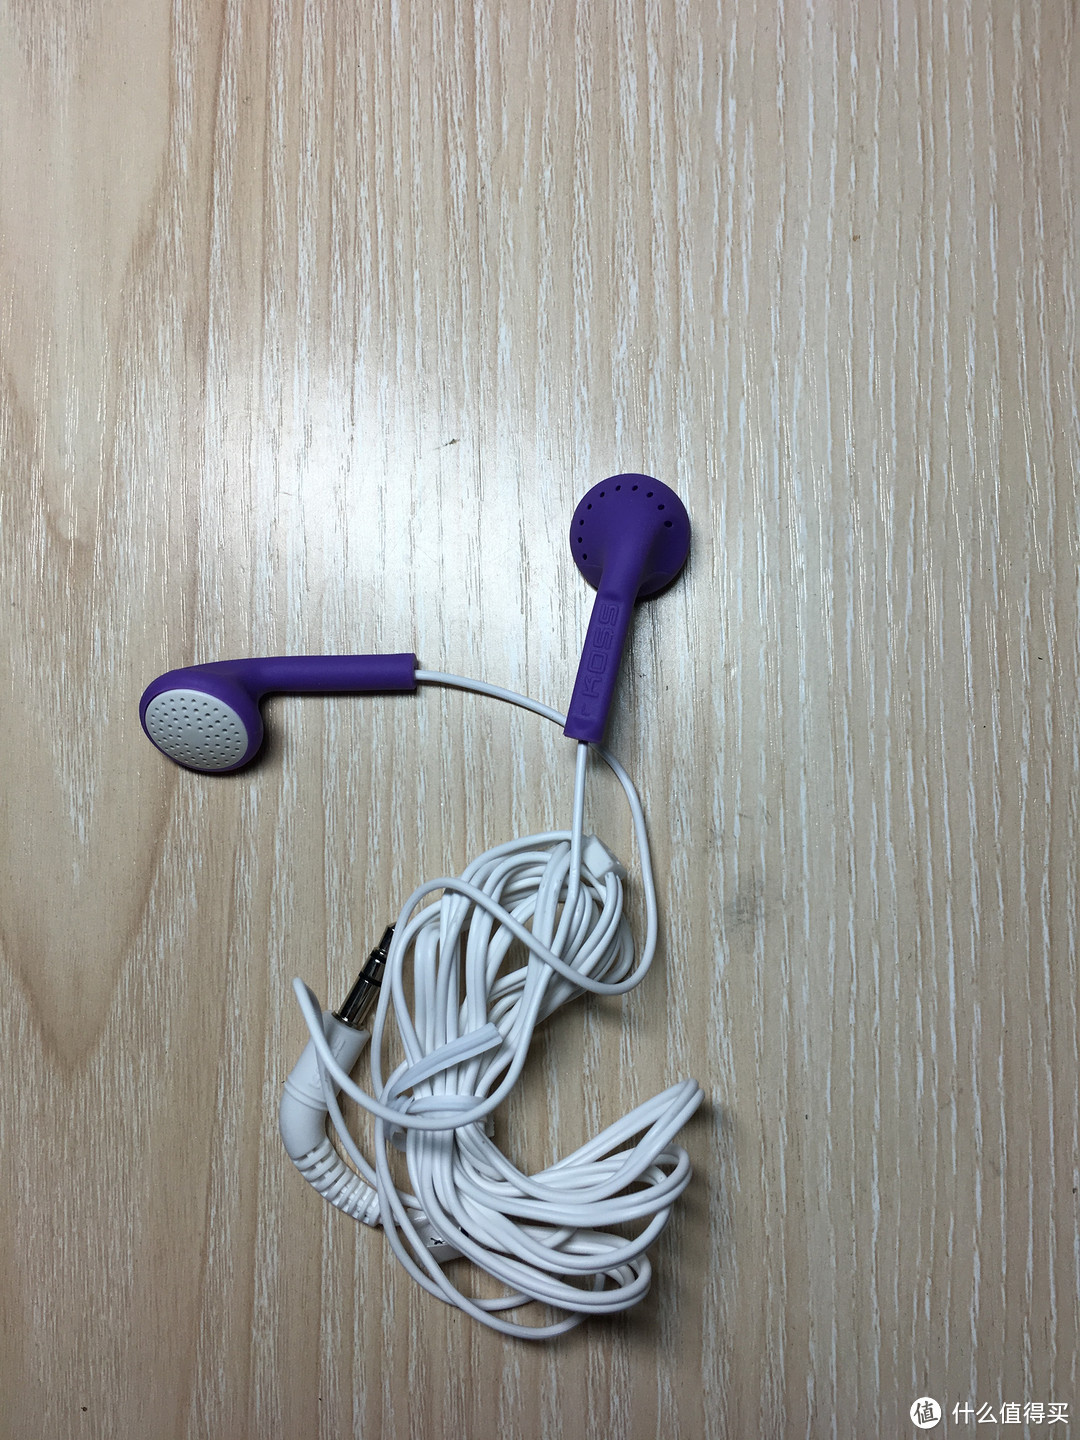 19快也是钱系列---KOSS 高斯 KE10 平头耳塞式耳机 紫色&KOSS 高斯 KE10 平头耳塞式耳机 紫色 开箱简评